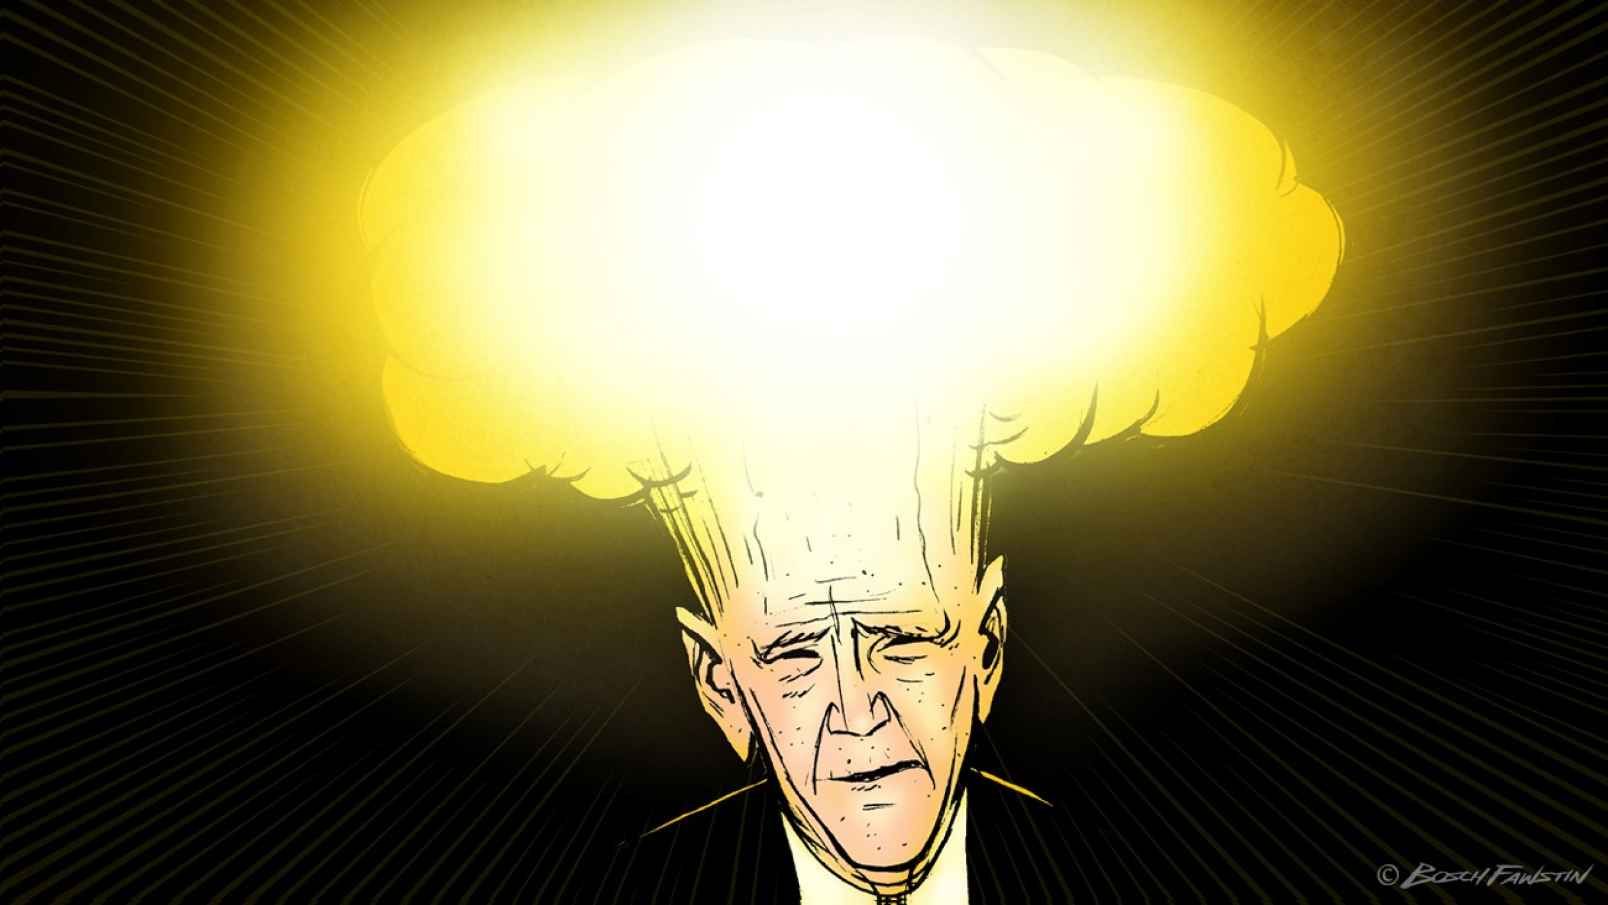 cartoon Biden with Mushroom cloud head cartoon Biden with Mushroom cloud head